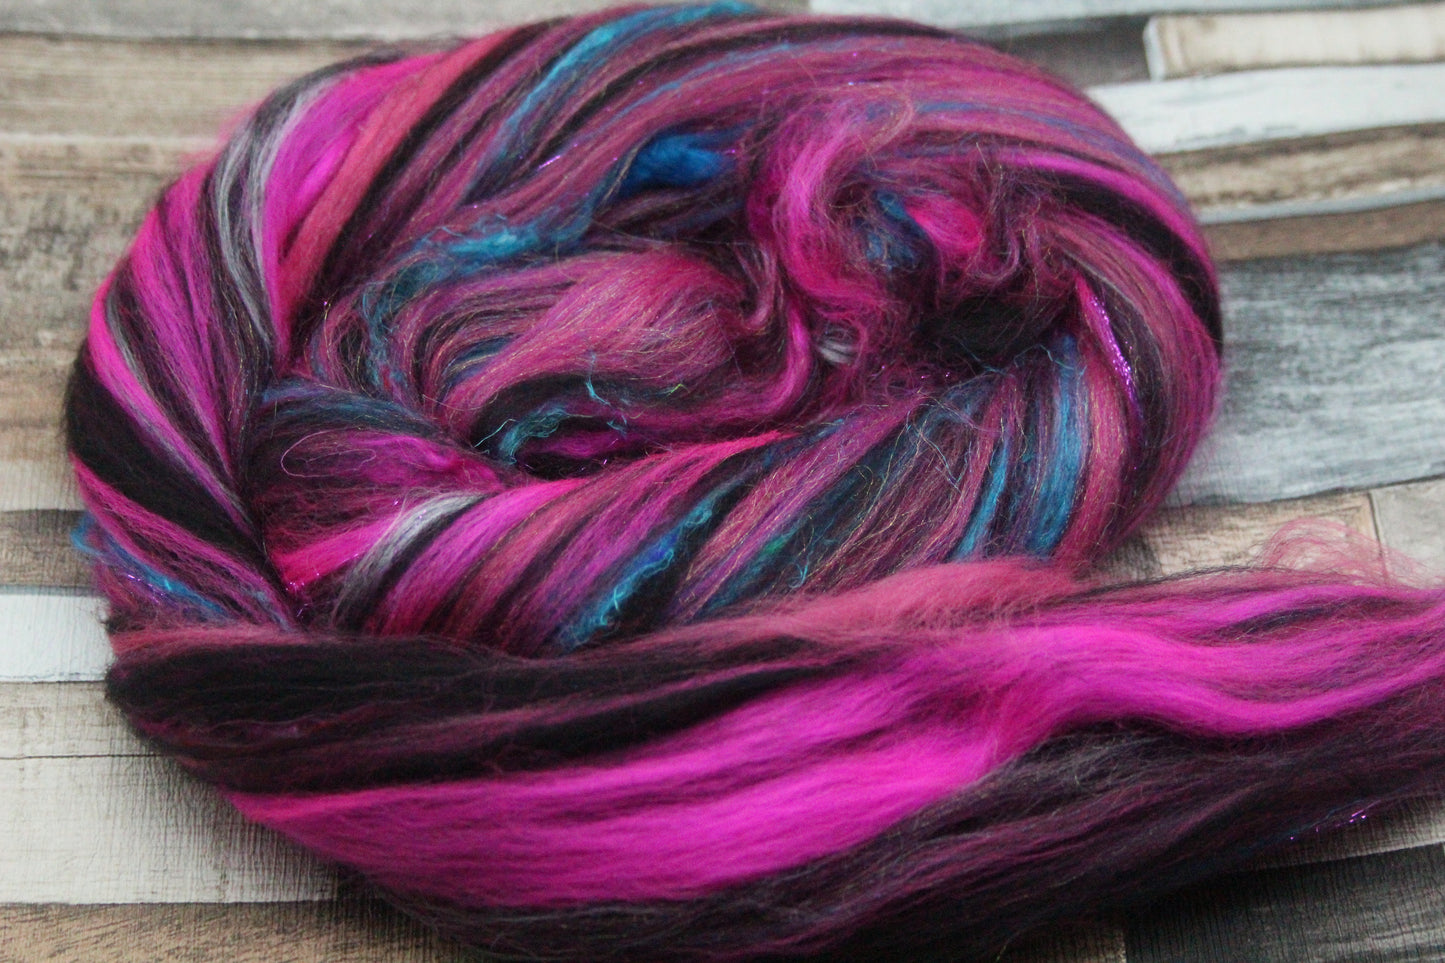 Merino Wool Blend - Pink Black - 32 grams / 1.1 oz  - Fibre for felting, weaving or spinning